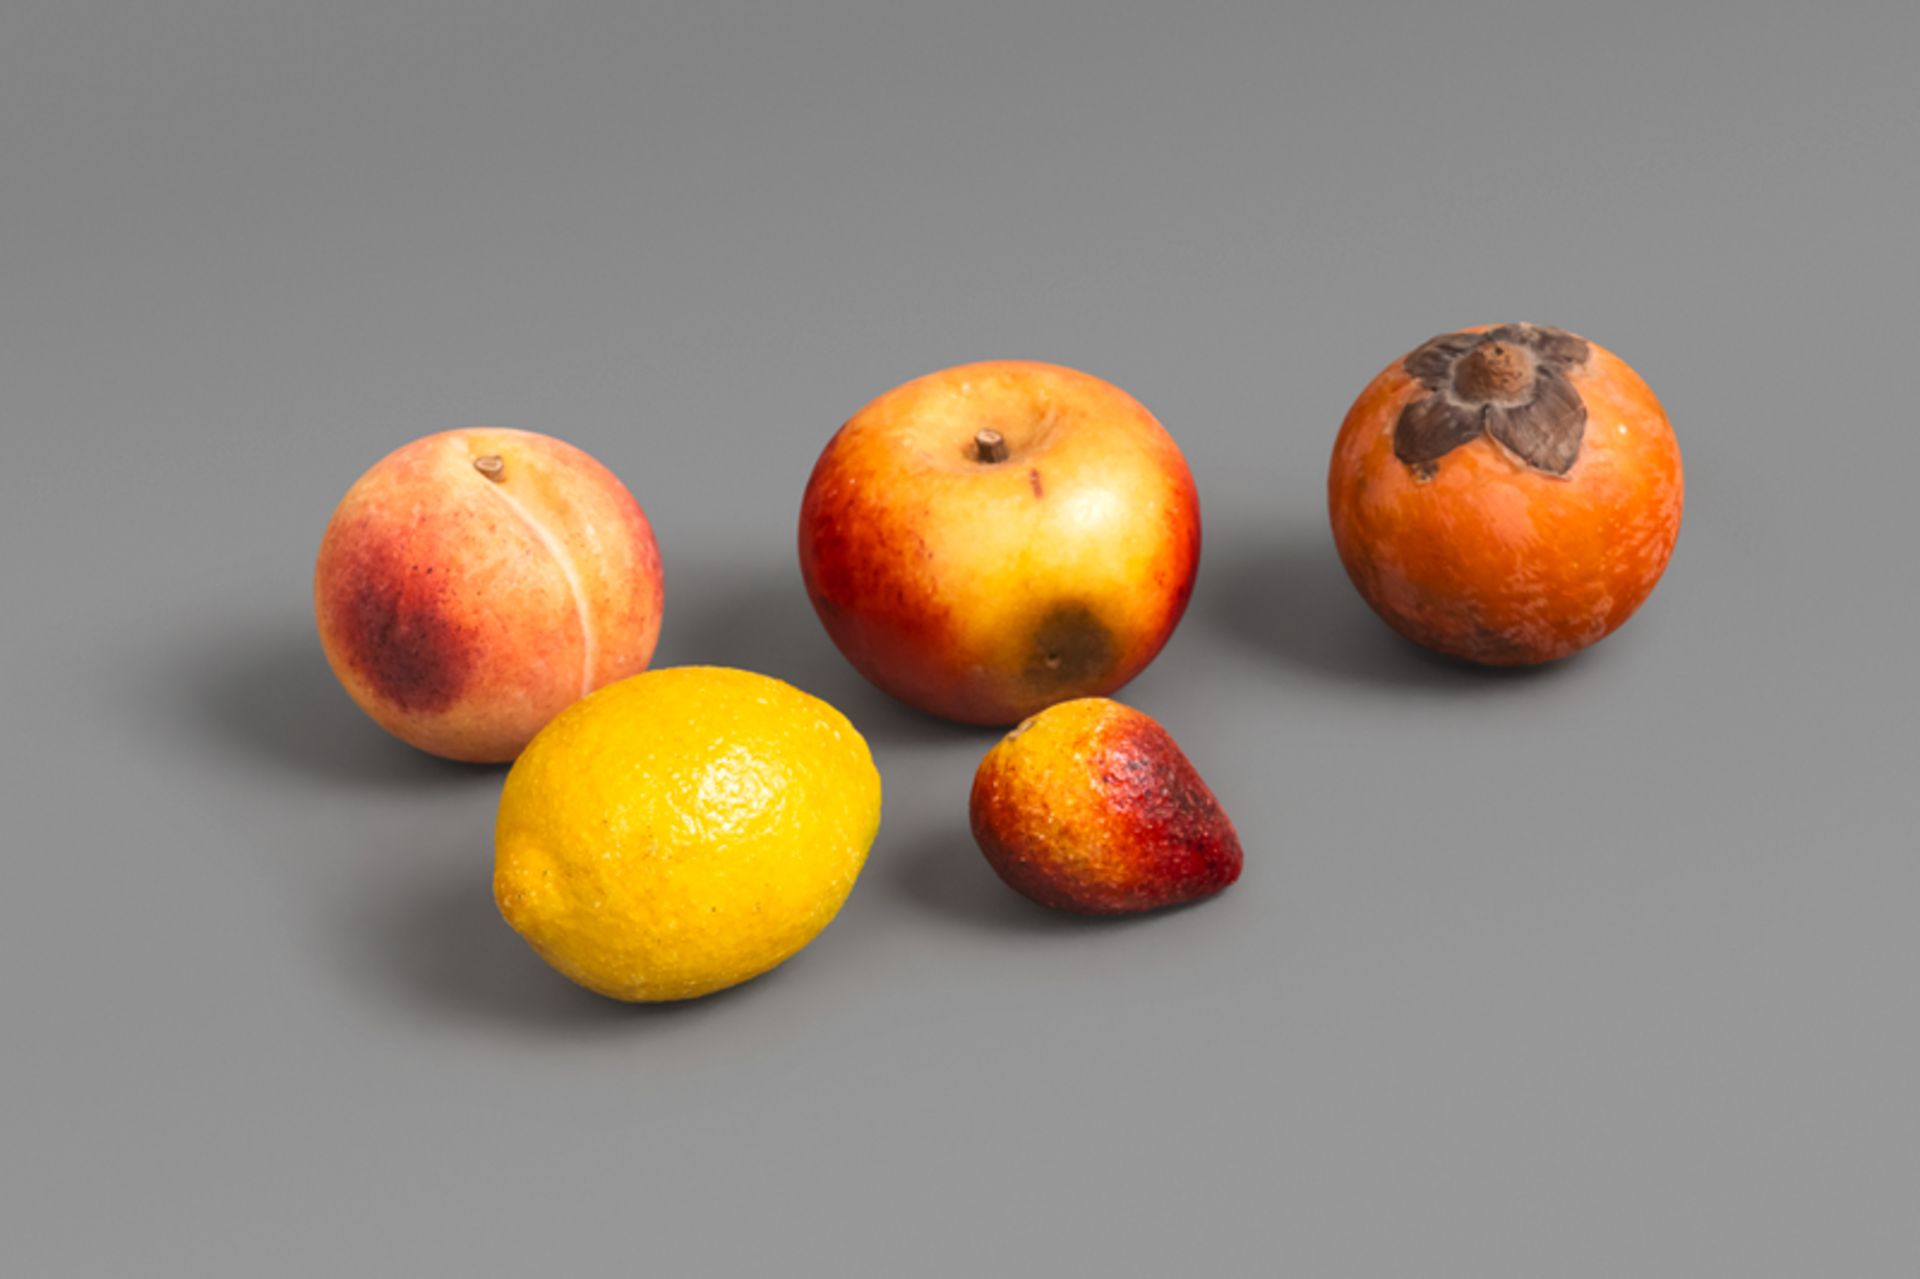 Marmorfrüchte: Apfel, Pfirsich, Zitrone, Kaki und Erdbeere